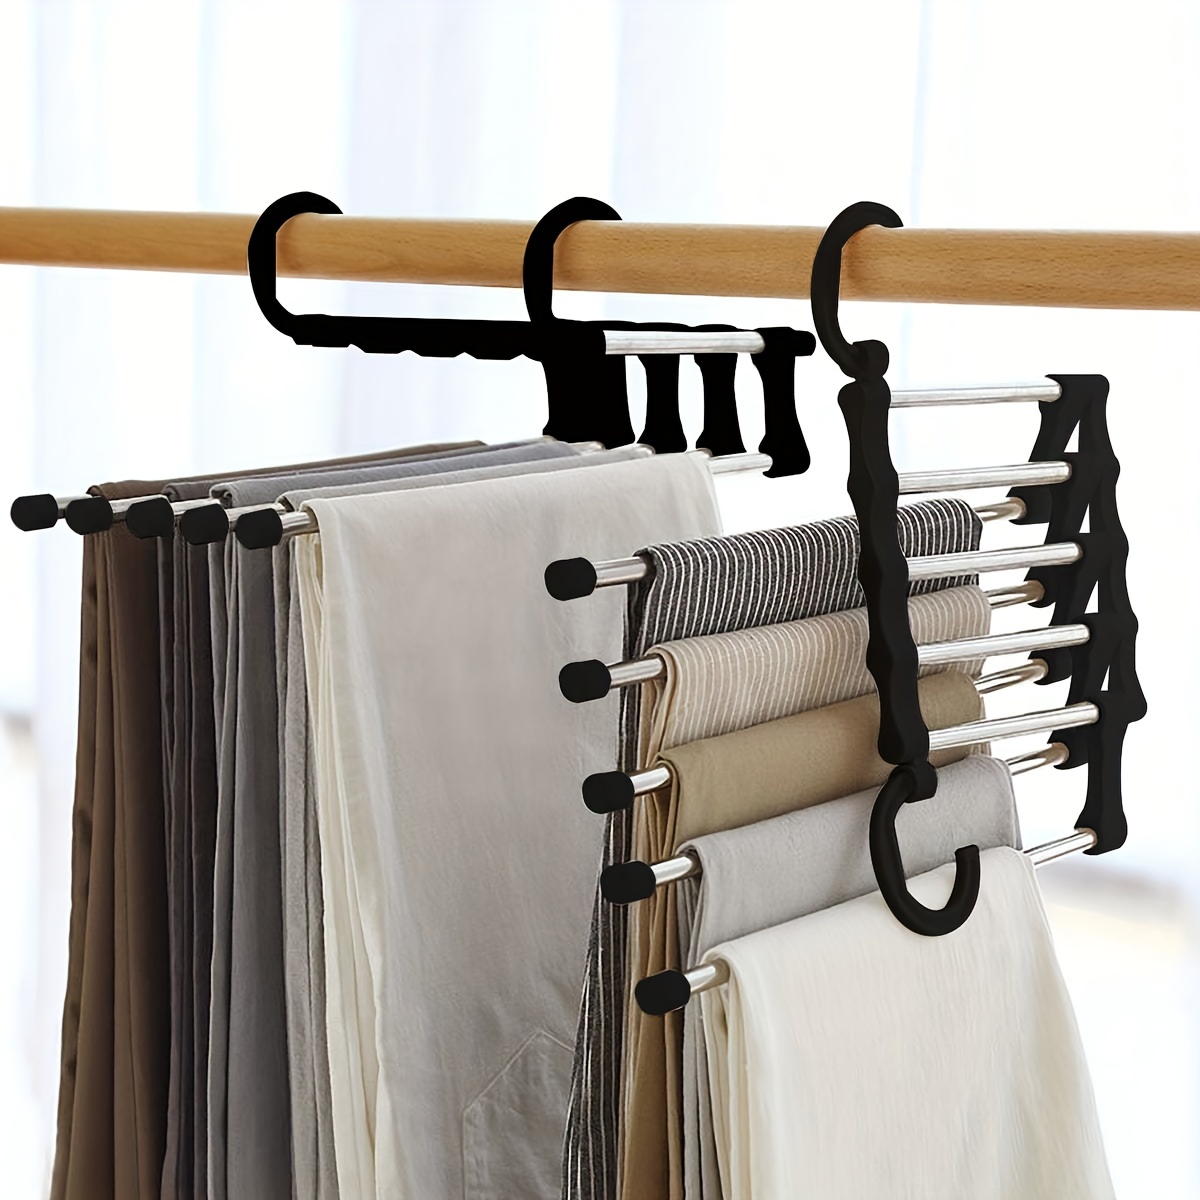 Hangers Racks Multi Function Magic Pants Rotatable Folding Stainless Steel  Trouser Hanger Non Slip 6 In 1 Rack For Home Travel Dorm 231027 From  Kang09, $11.75